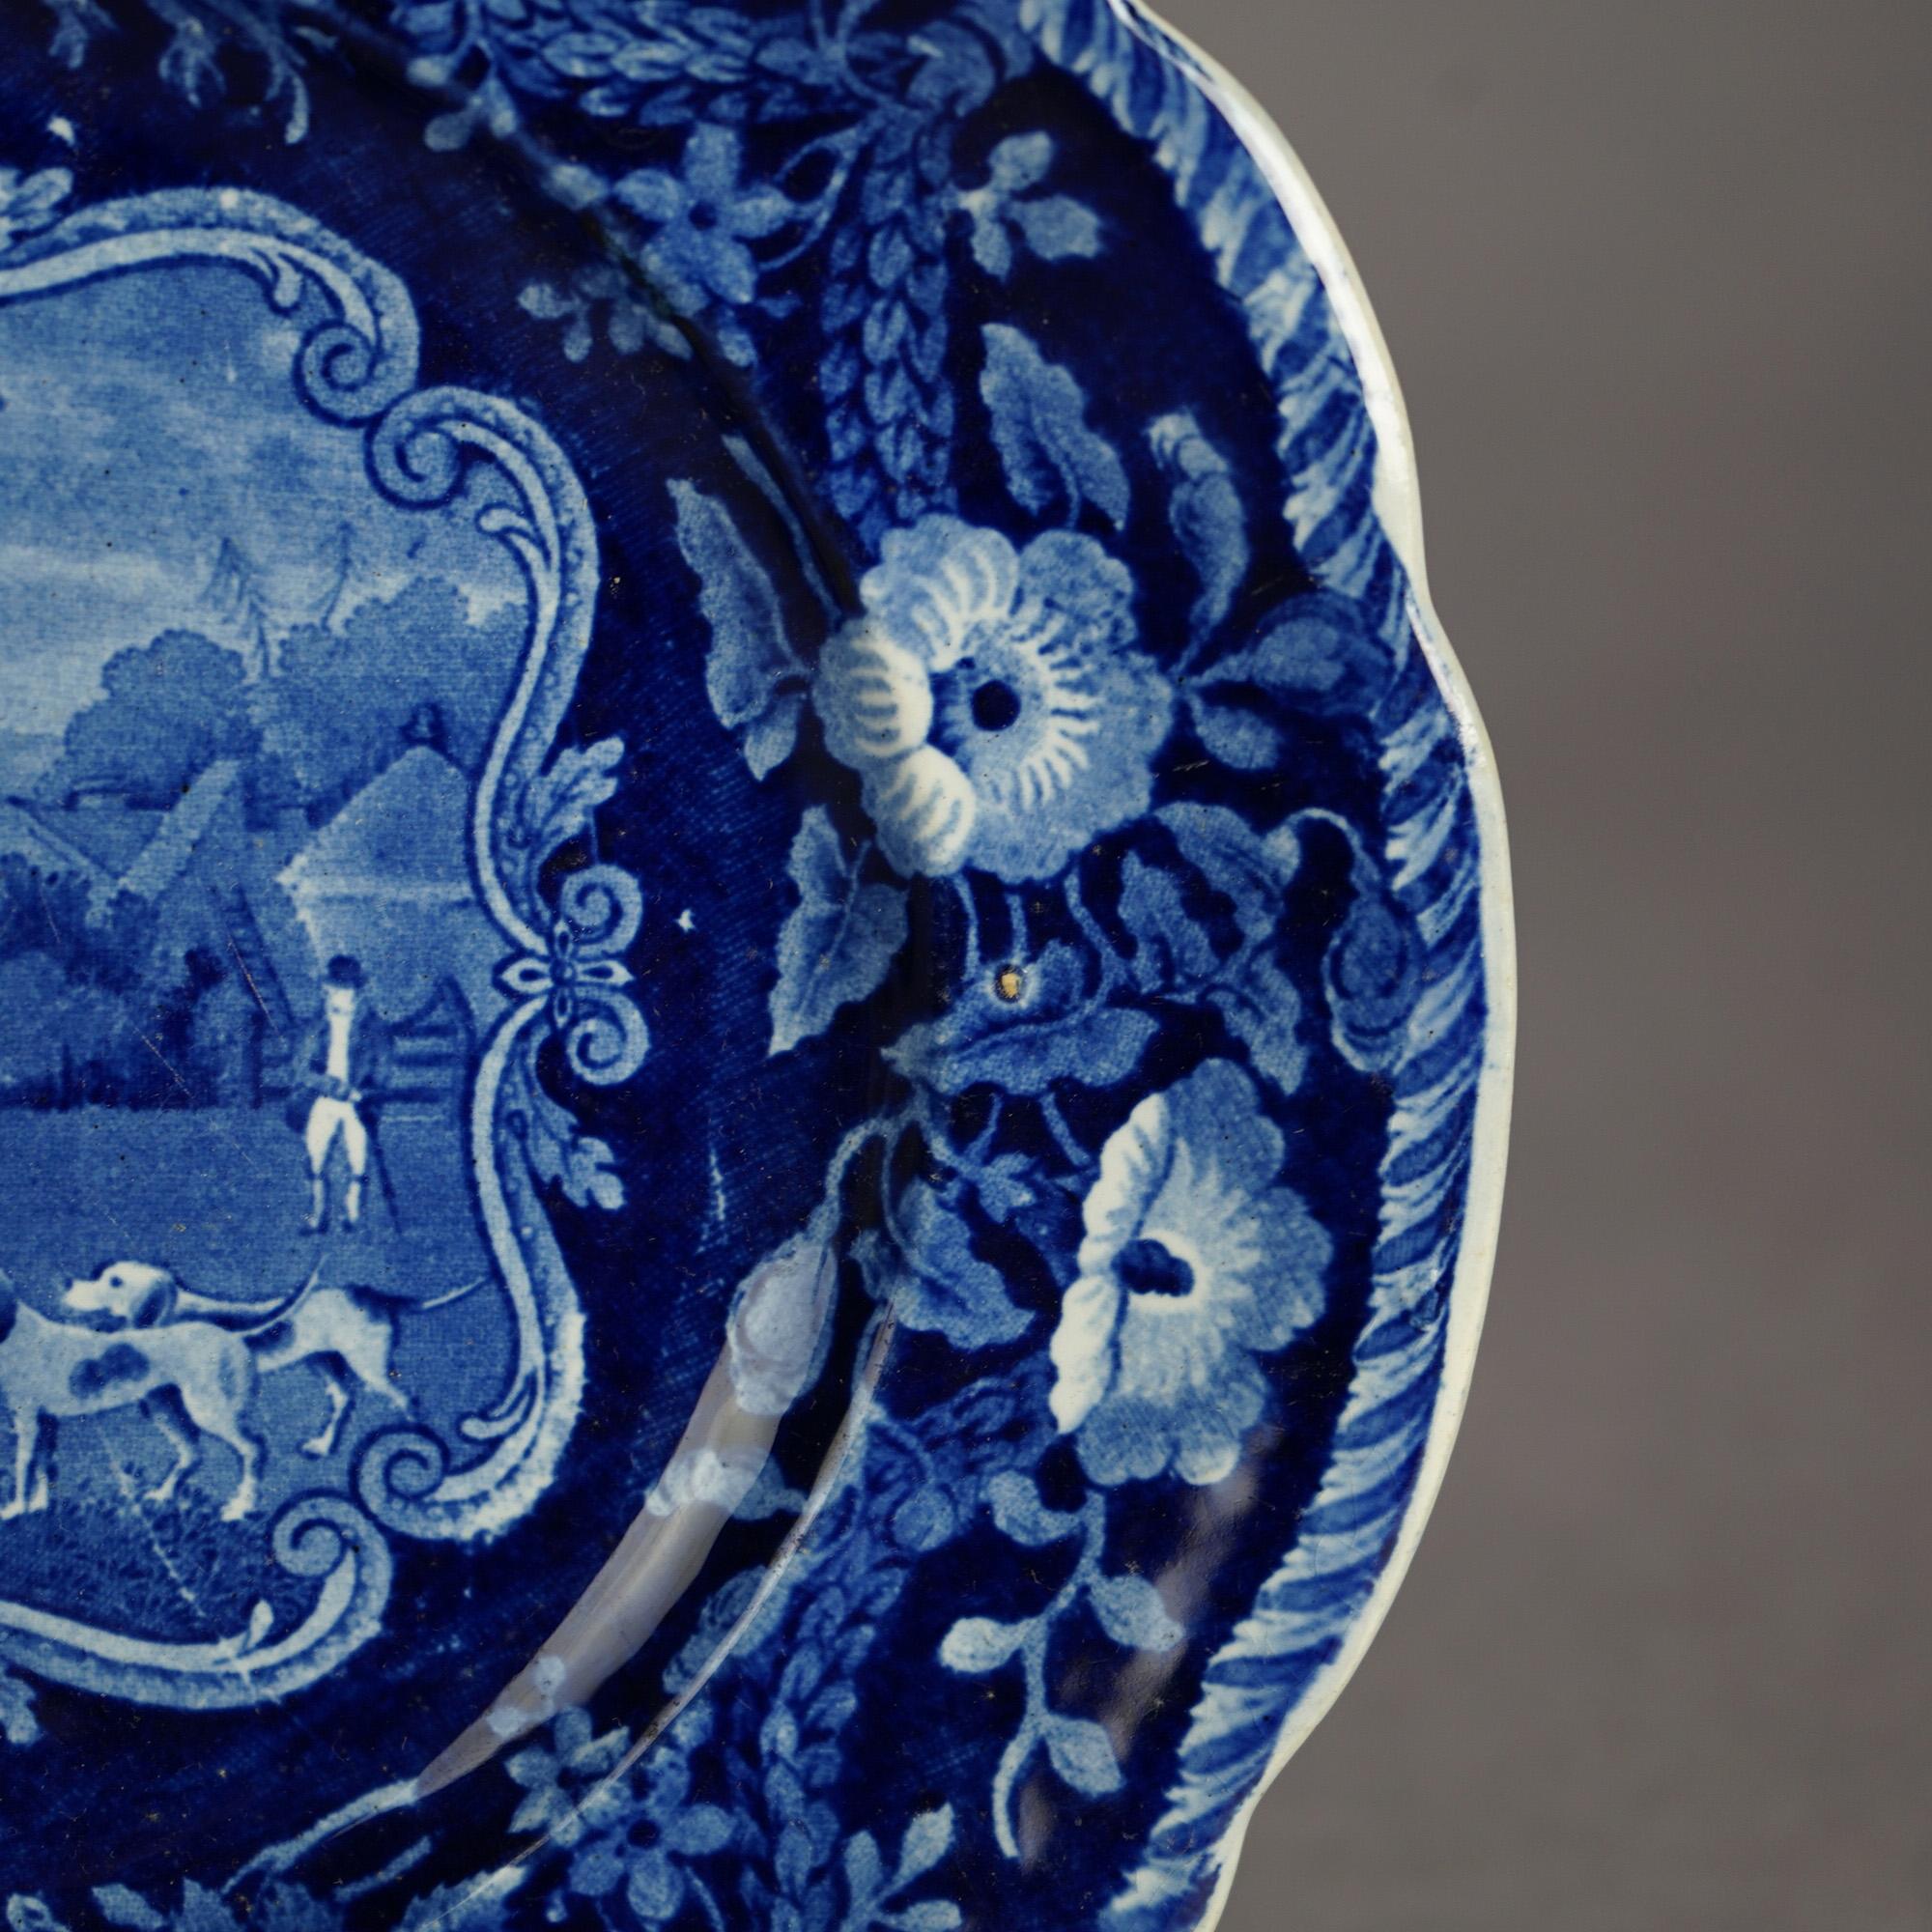 Five Antique Staffordshire Pottery Flow Blue Plates with Hunt Scènes 19th C 10